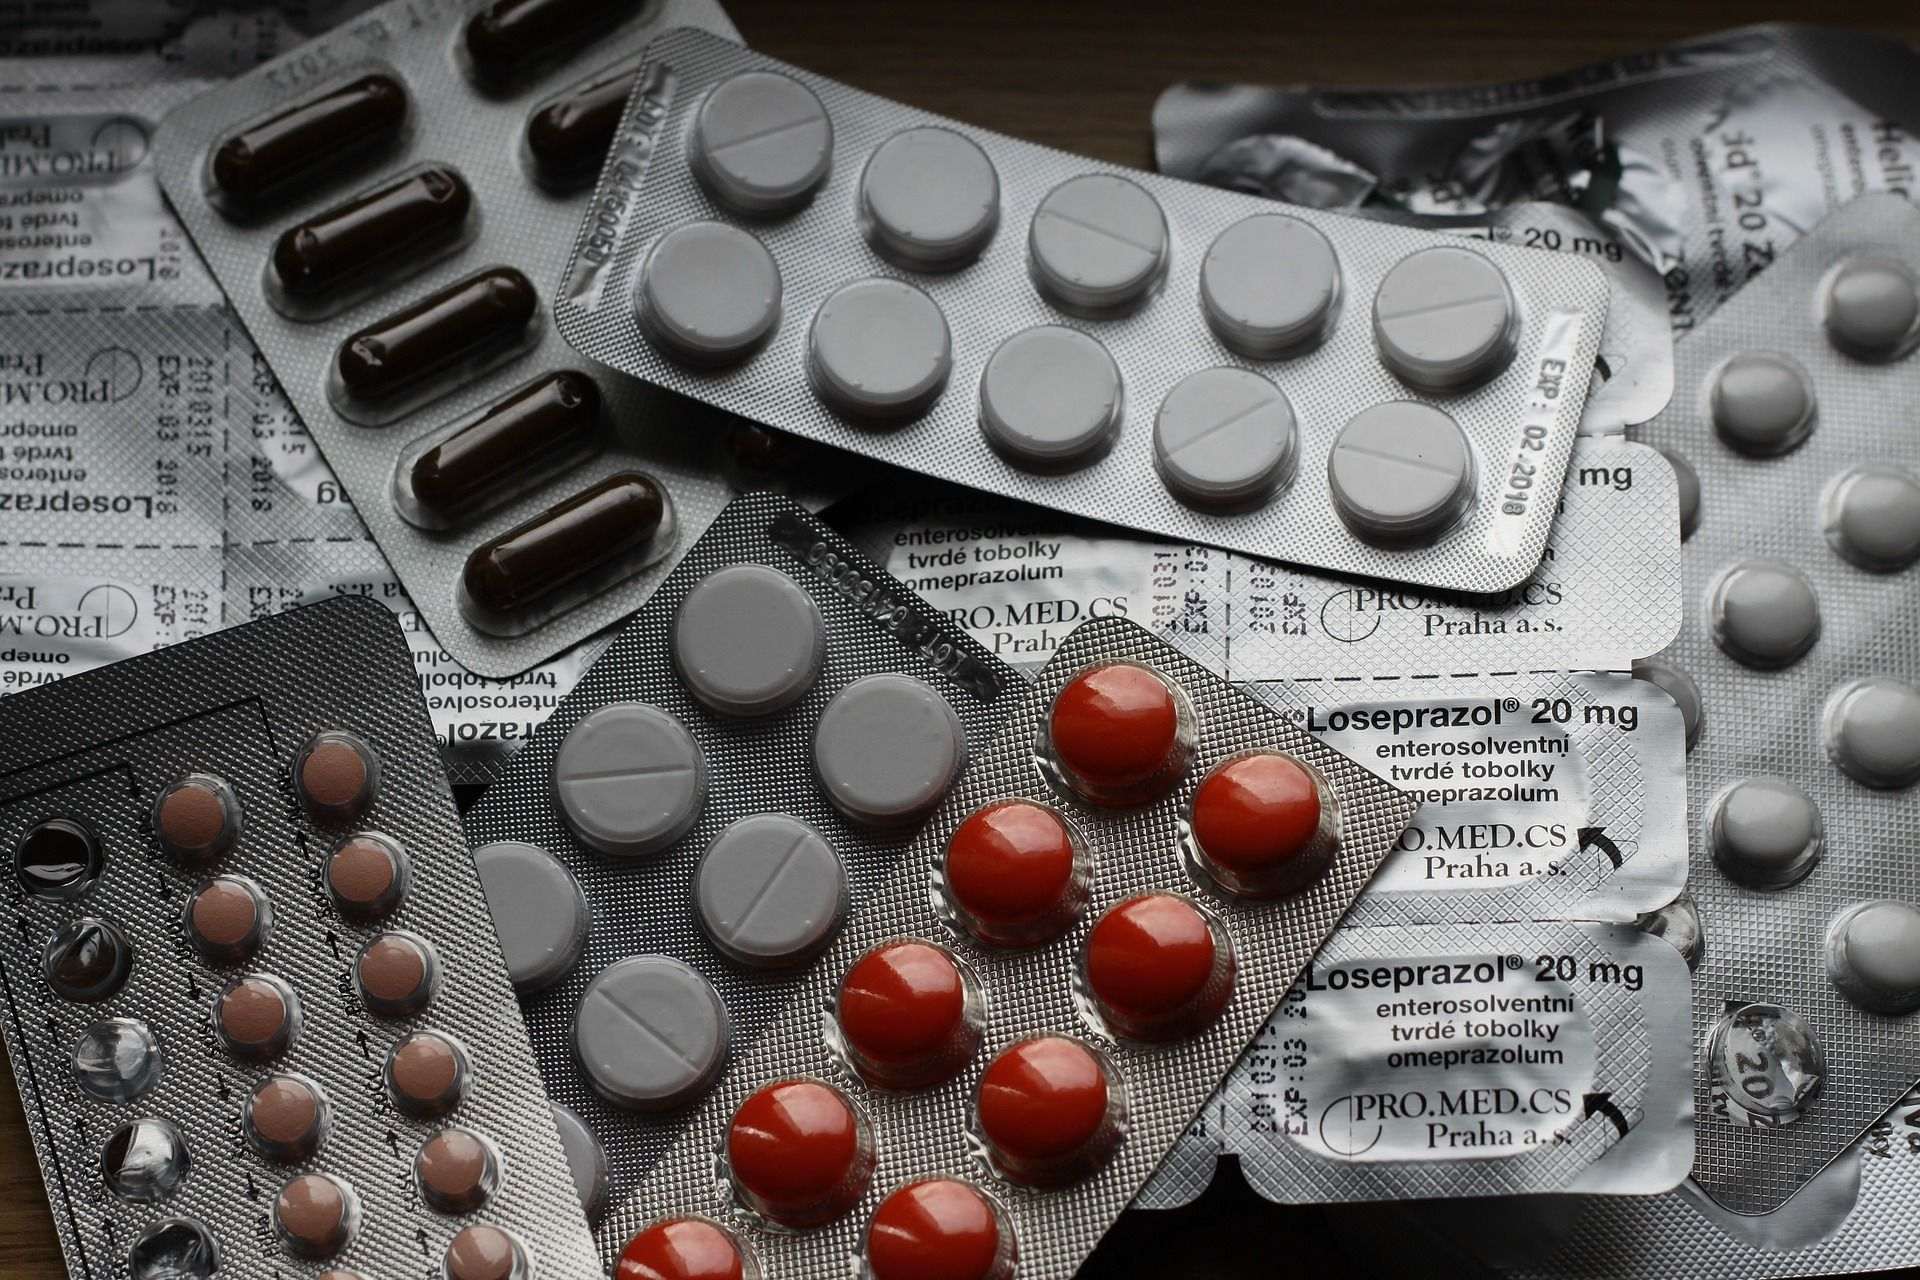 Detinguts per vendre pastilles per la disfunció erèctil com a suplement nutricional